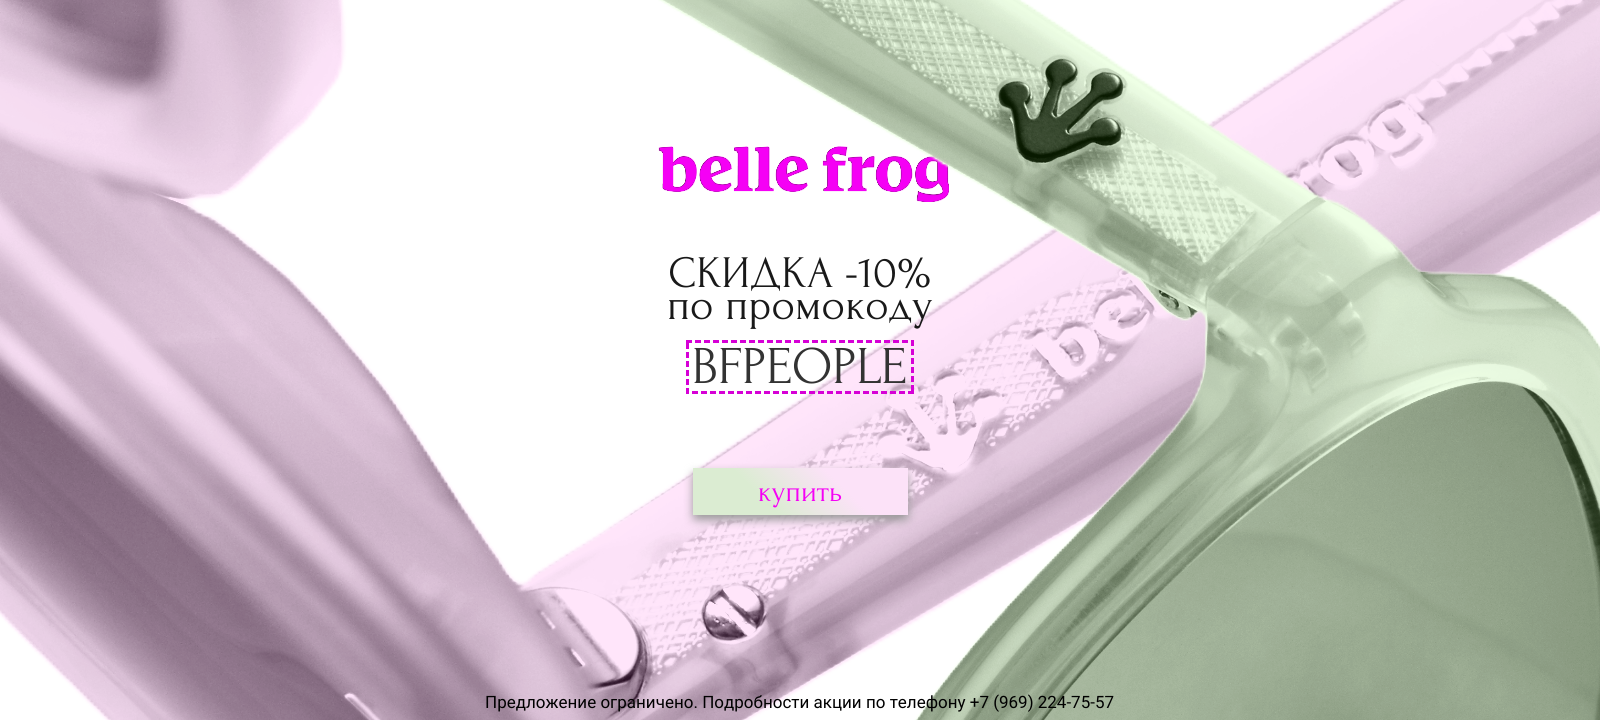 Очки Belle Frog купить на сайте MID group